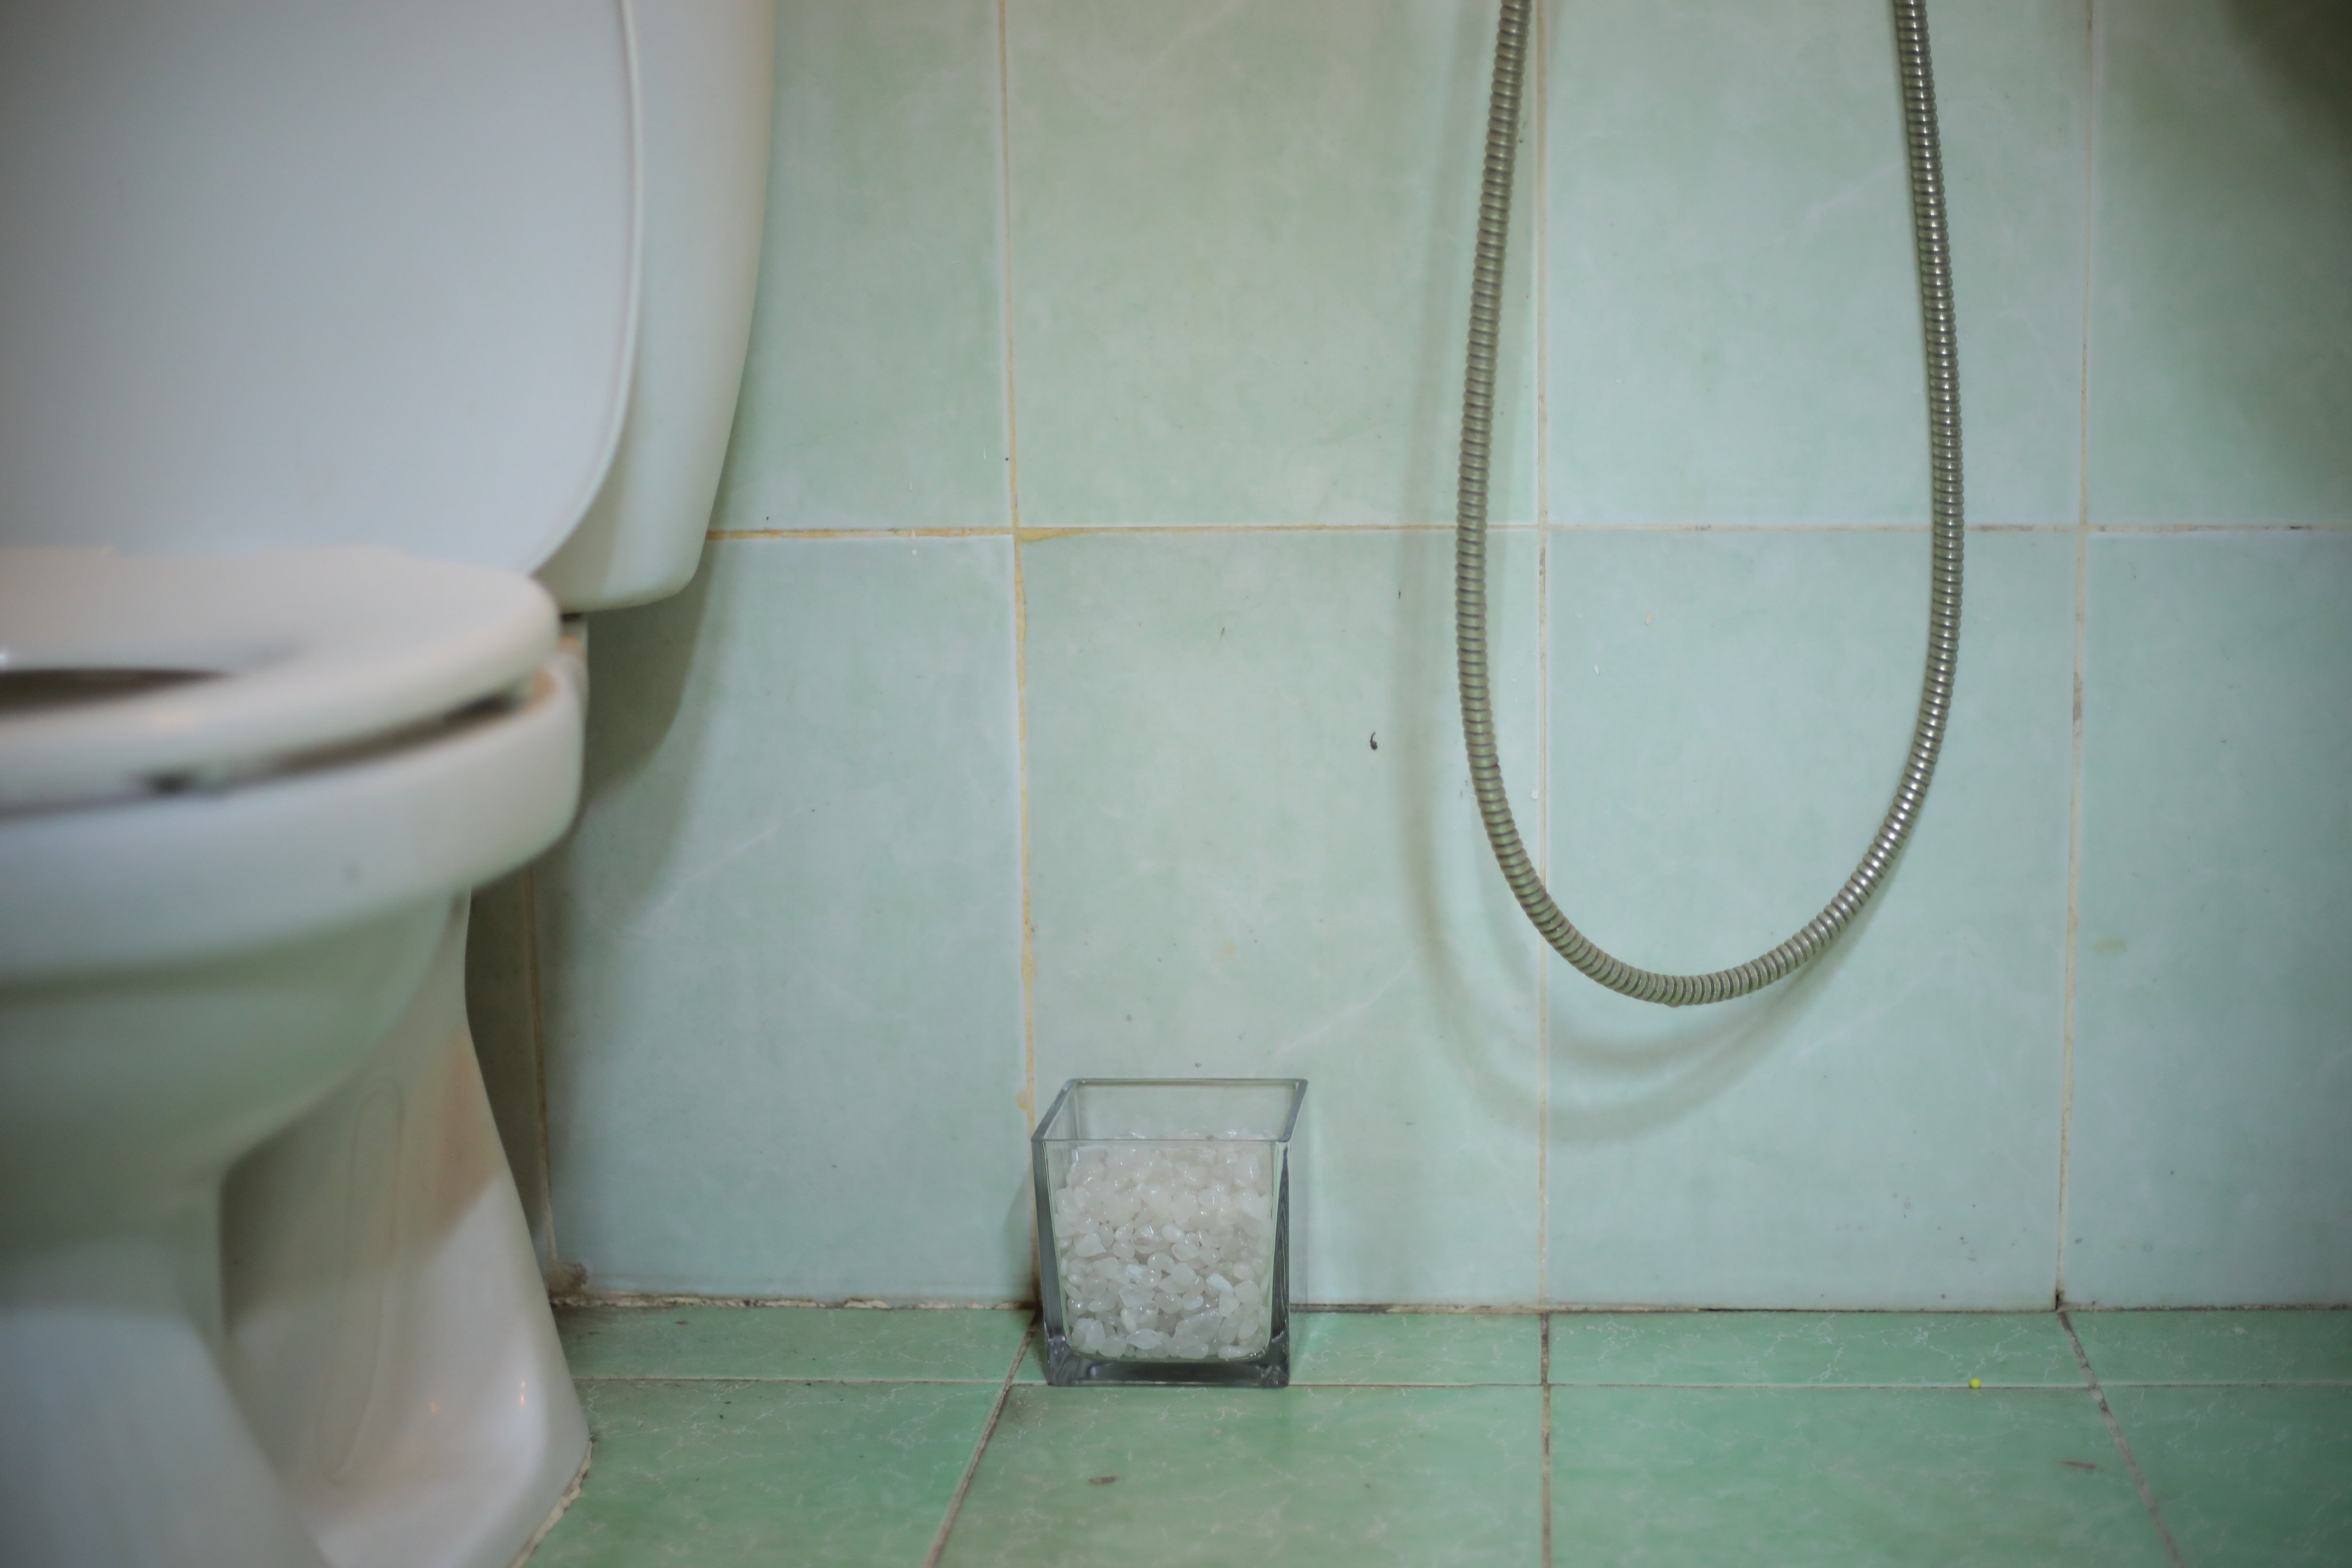 Bảo bình thủy thạch anh - Pháp khí hóa giải nhà vệ sinh sai phong thủy, đá thạch anh trắng, hũ thủy tinh, thạch anh tự nhiên, đặt tại nhà vệ sinh